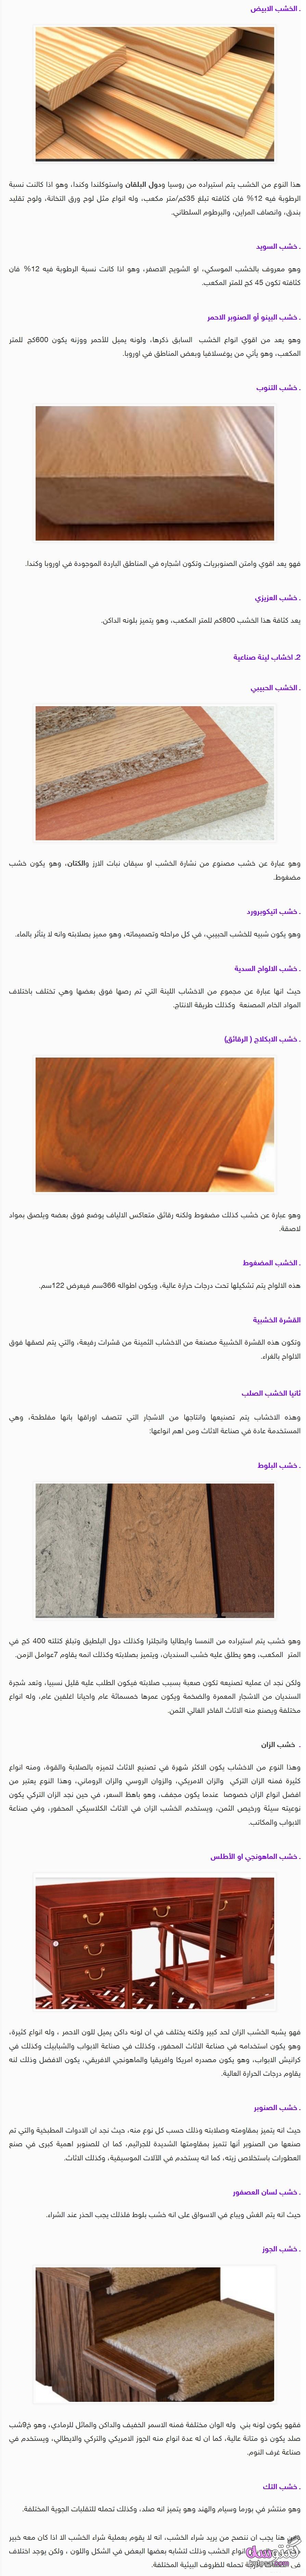 أنواع الخشب واستخداماته ،تعرفي على أنواع الخشب بالصور kntosa.com_26_19_155